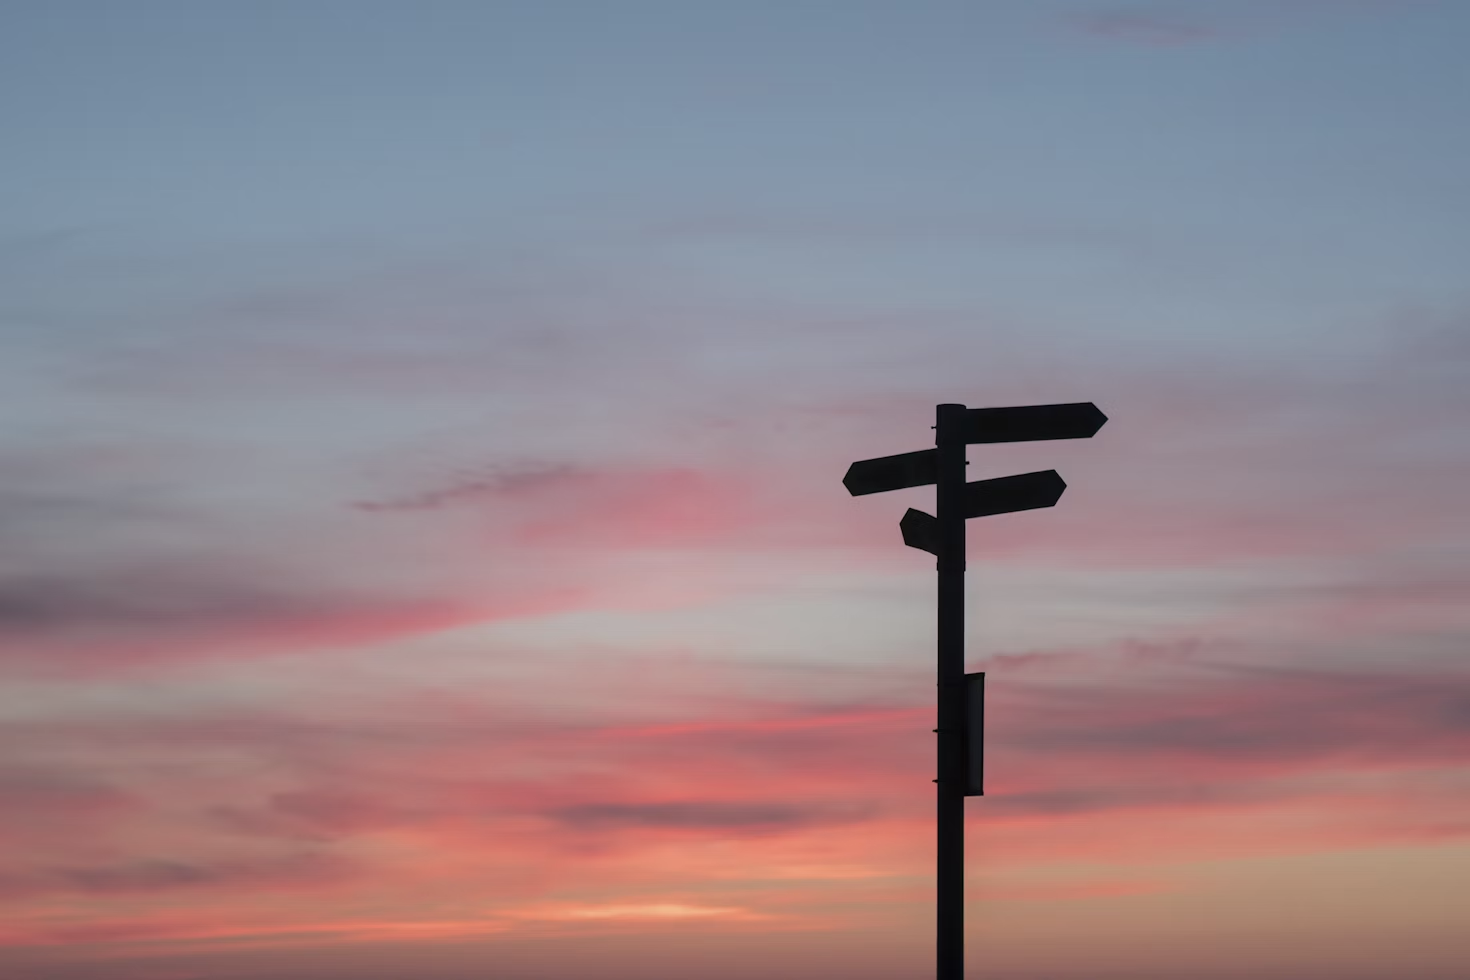 panneau indicateur avec quatre flèches indiquant la droite et la gauche devant un coucher de soleil